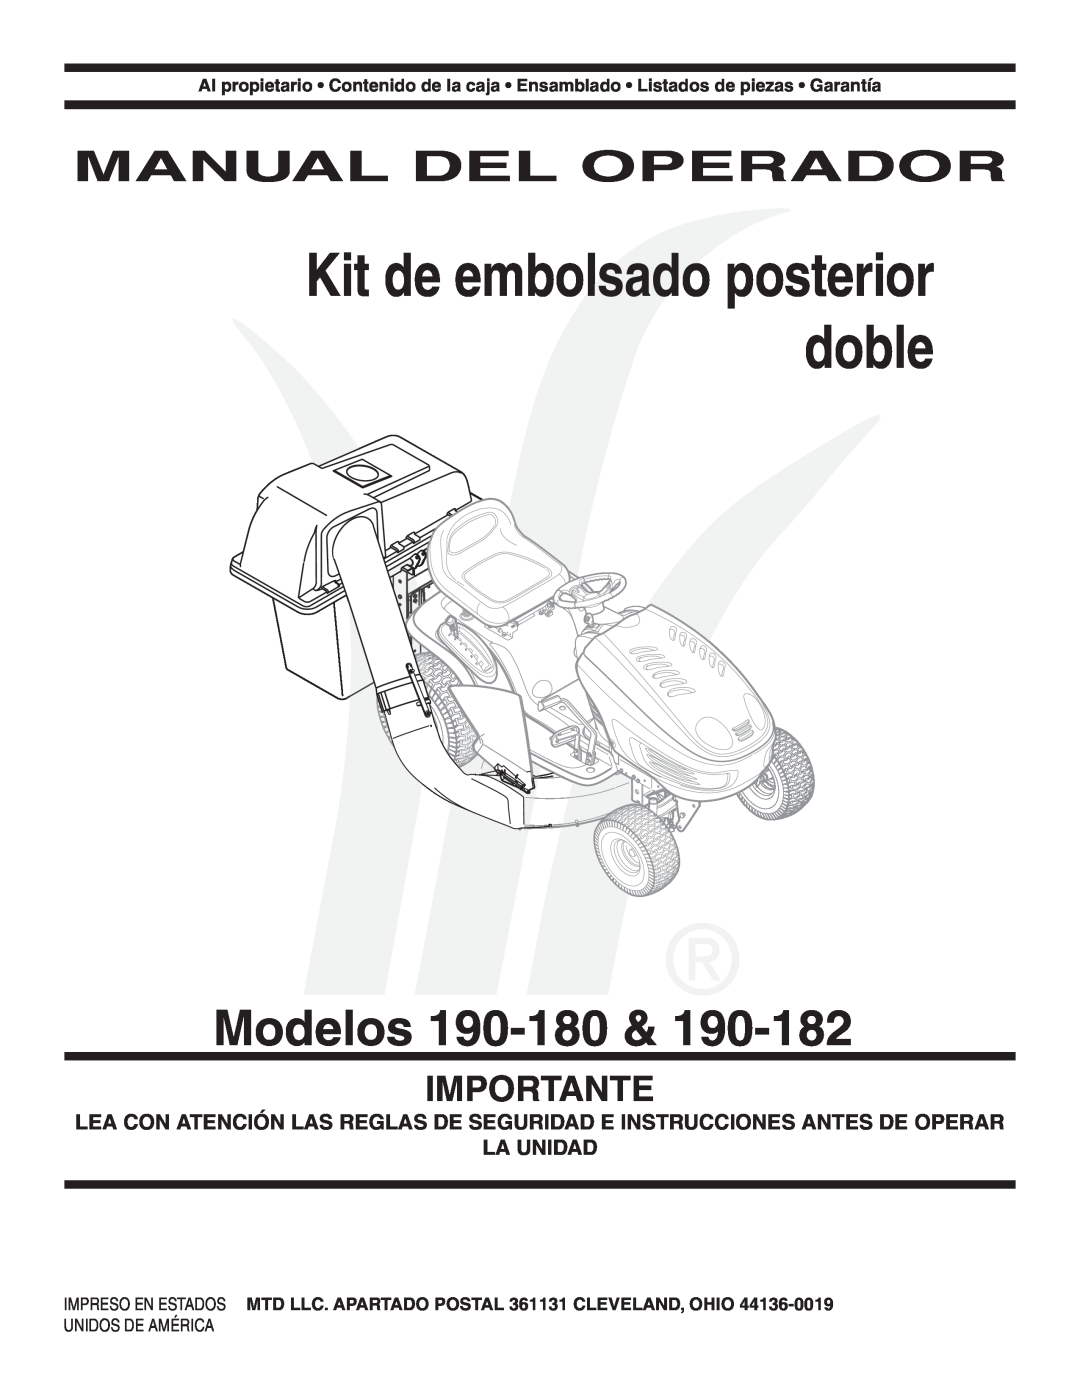 MTD 190-182,190-180 warranty Modelos, Manual Del Operador, Importante, Kit de embolsado posterior doble 